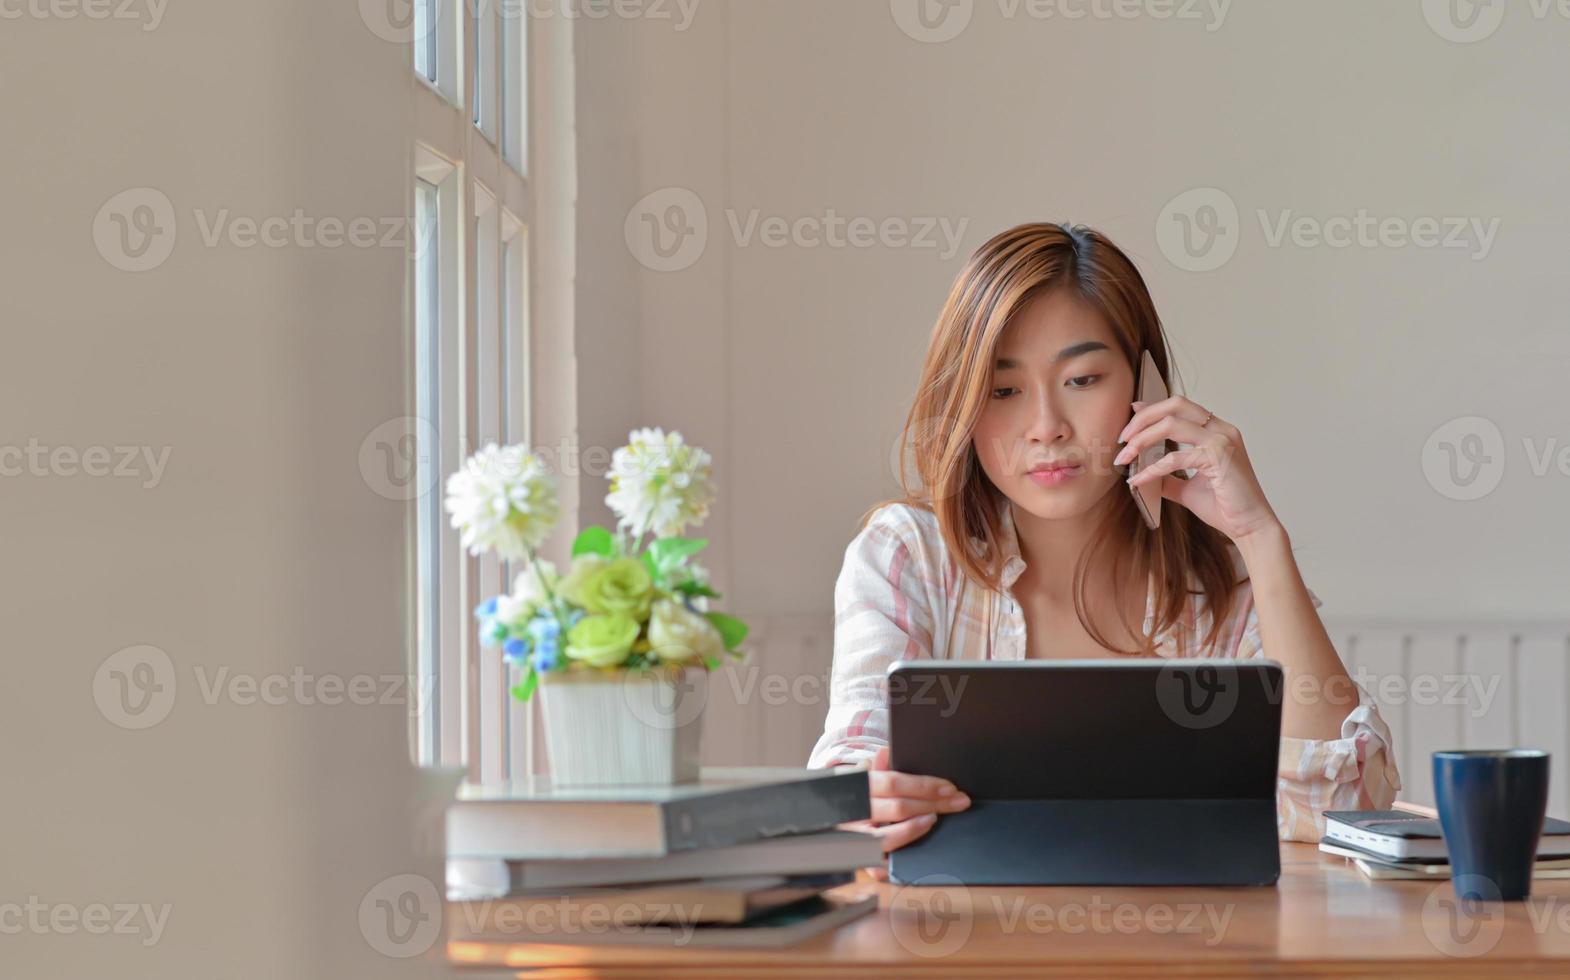 kvinnlig högskolestudent som studerar online hemma använder en smartphone för råd från en instruktör. foto